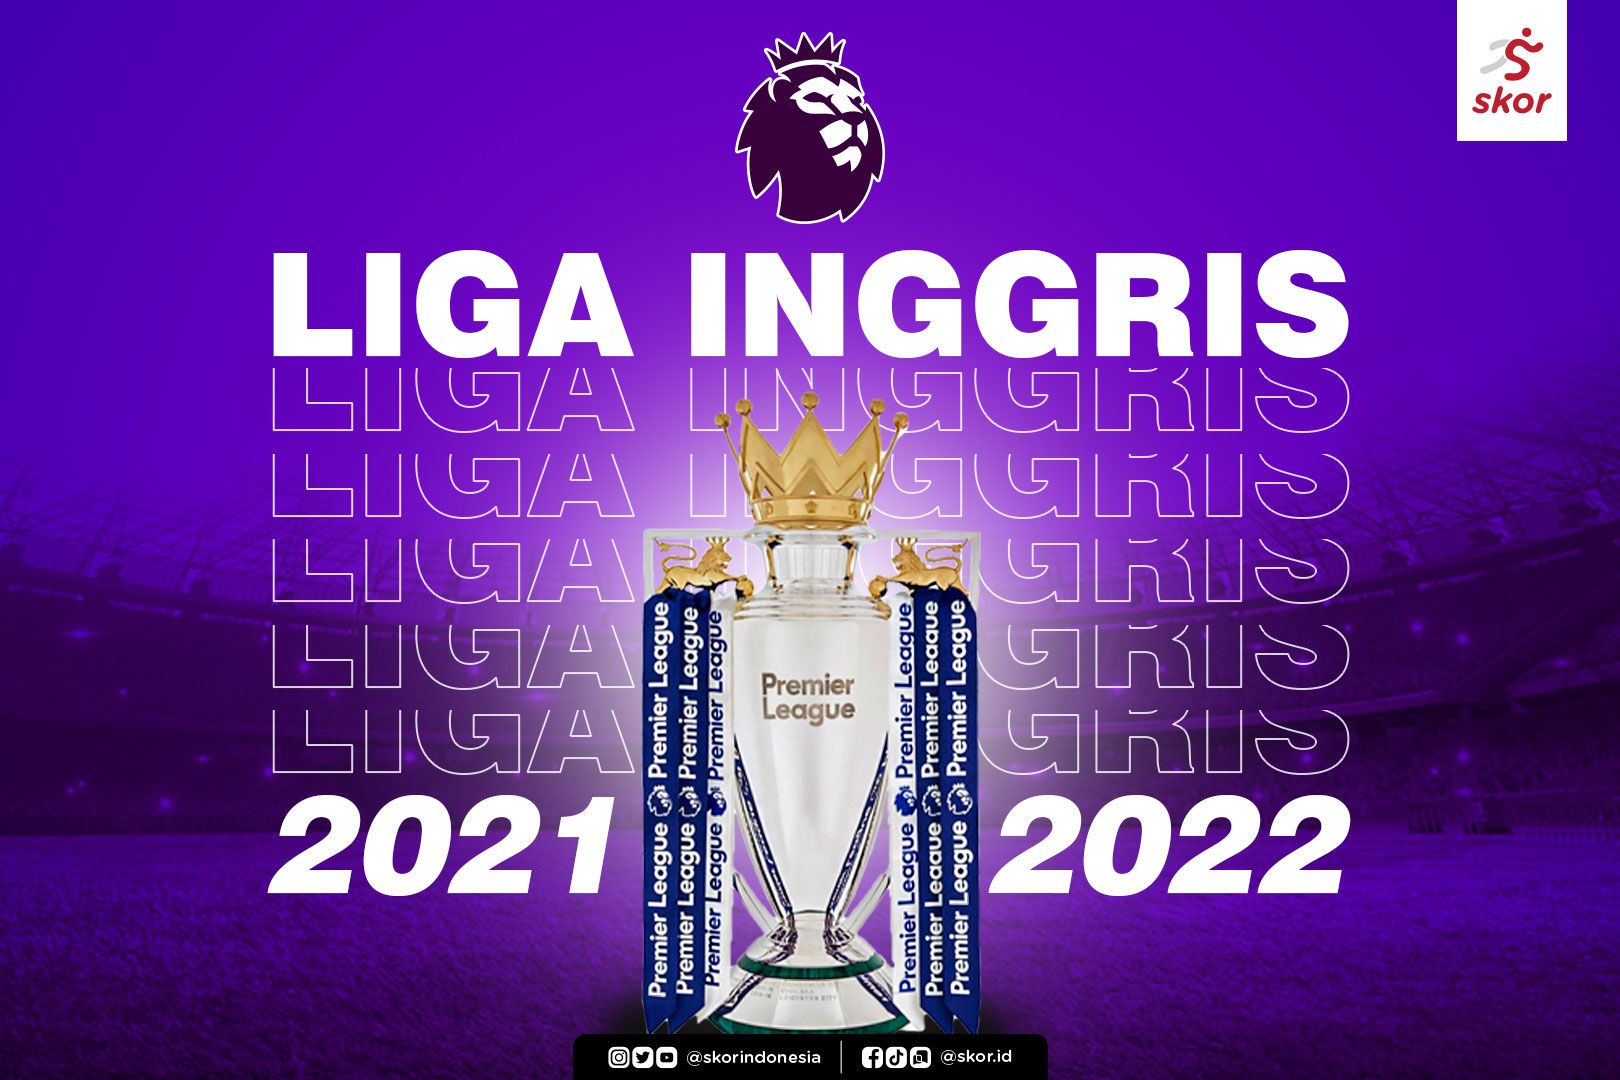 Klasemen liga inggris 2021 terbaru